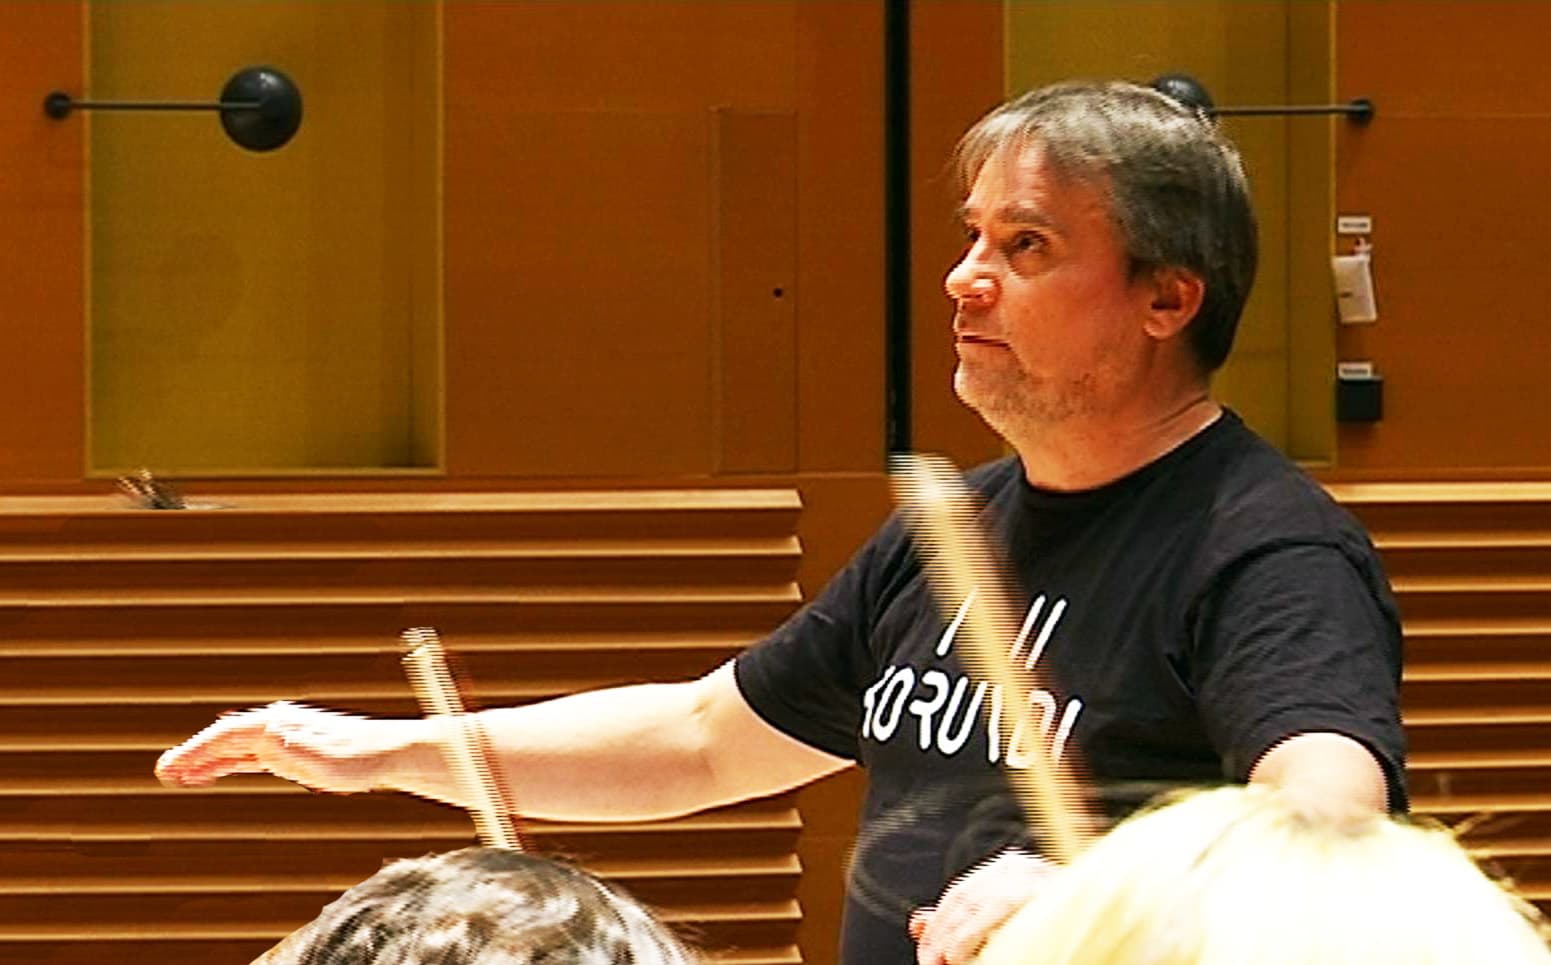 Lapin kamarikorkesterin taiteellinen johtaja John Storgårds nostaa tänä keväänä esiin ranskalaista musiikkia